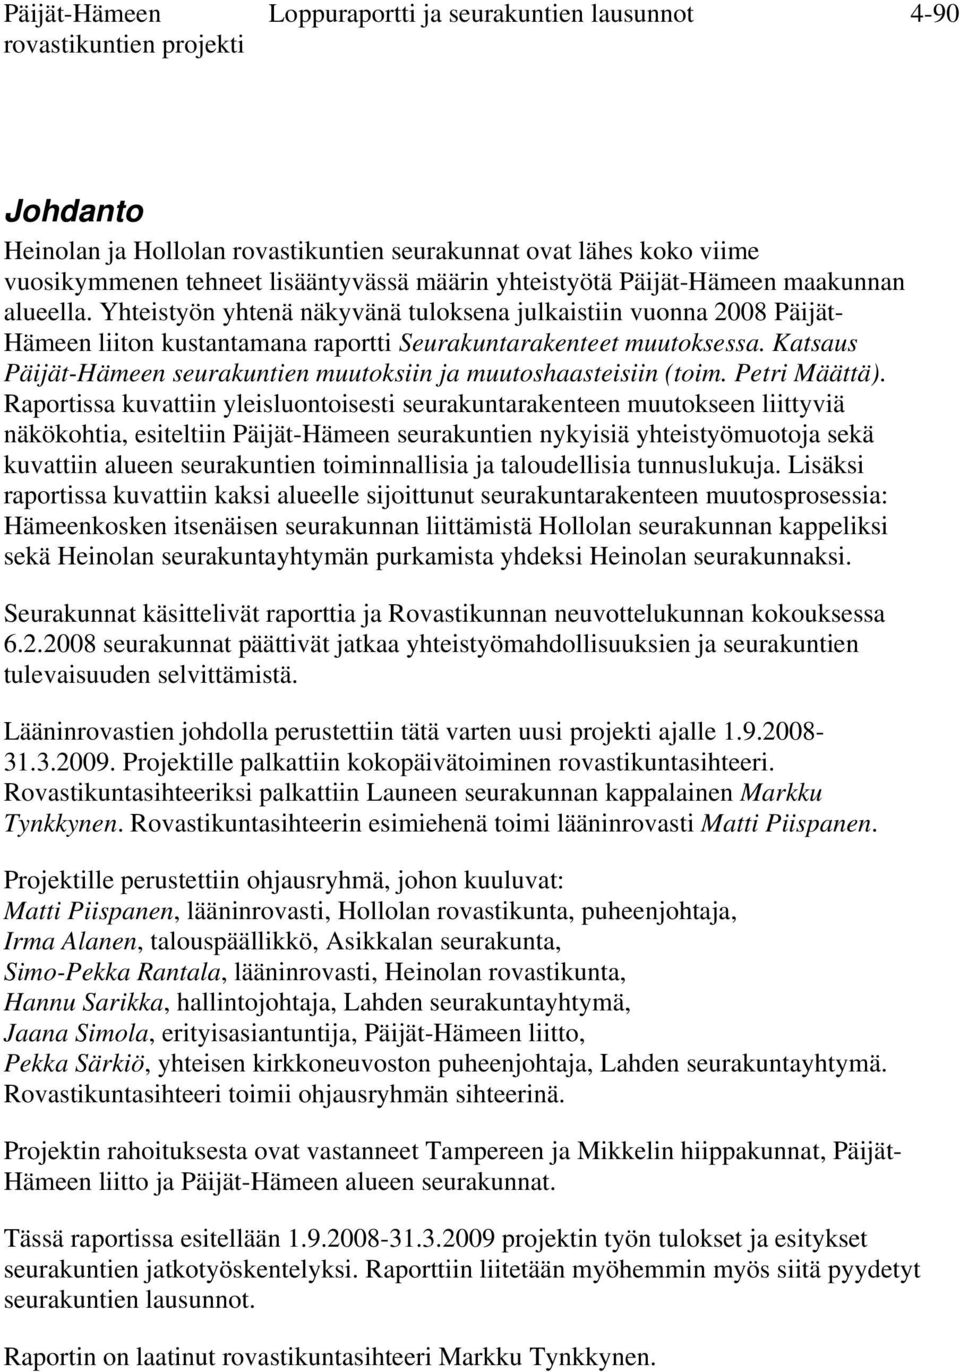 Katsaus Päijät-Hämeen seurakuntien muutoksiin ja muutoshaasteisiin (toim. Petri Määttä).